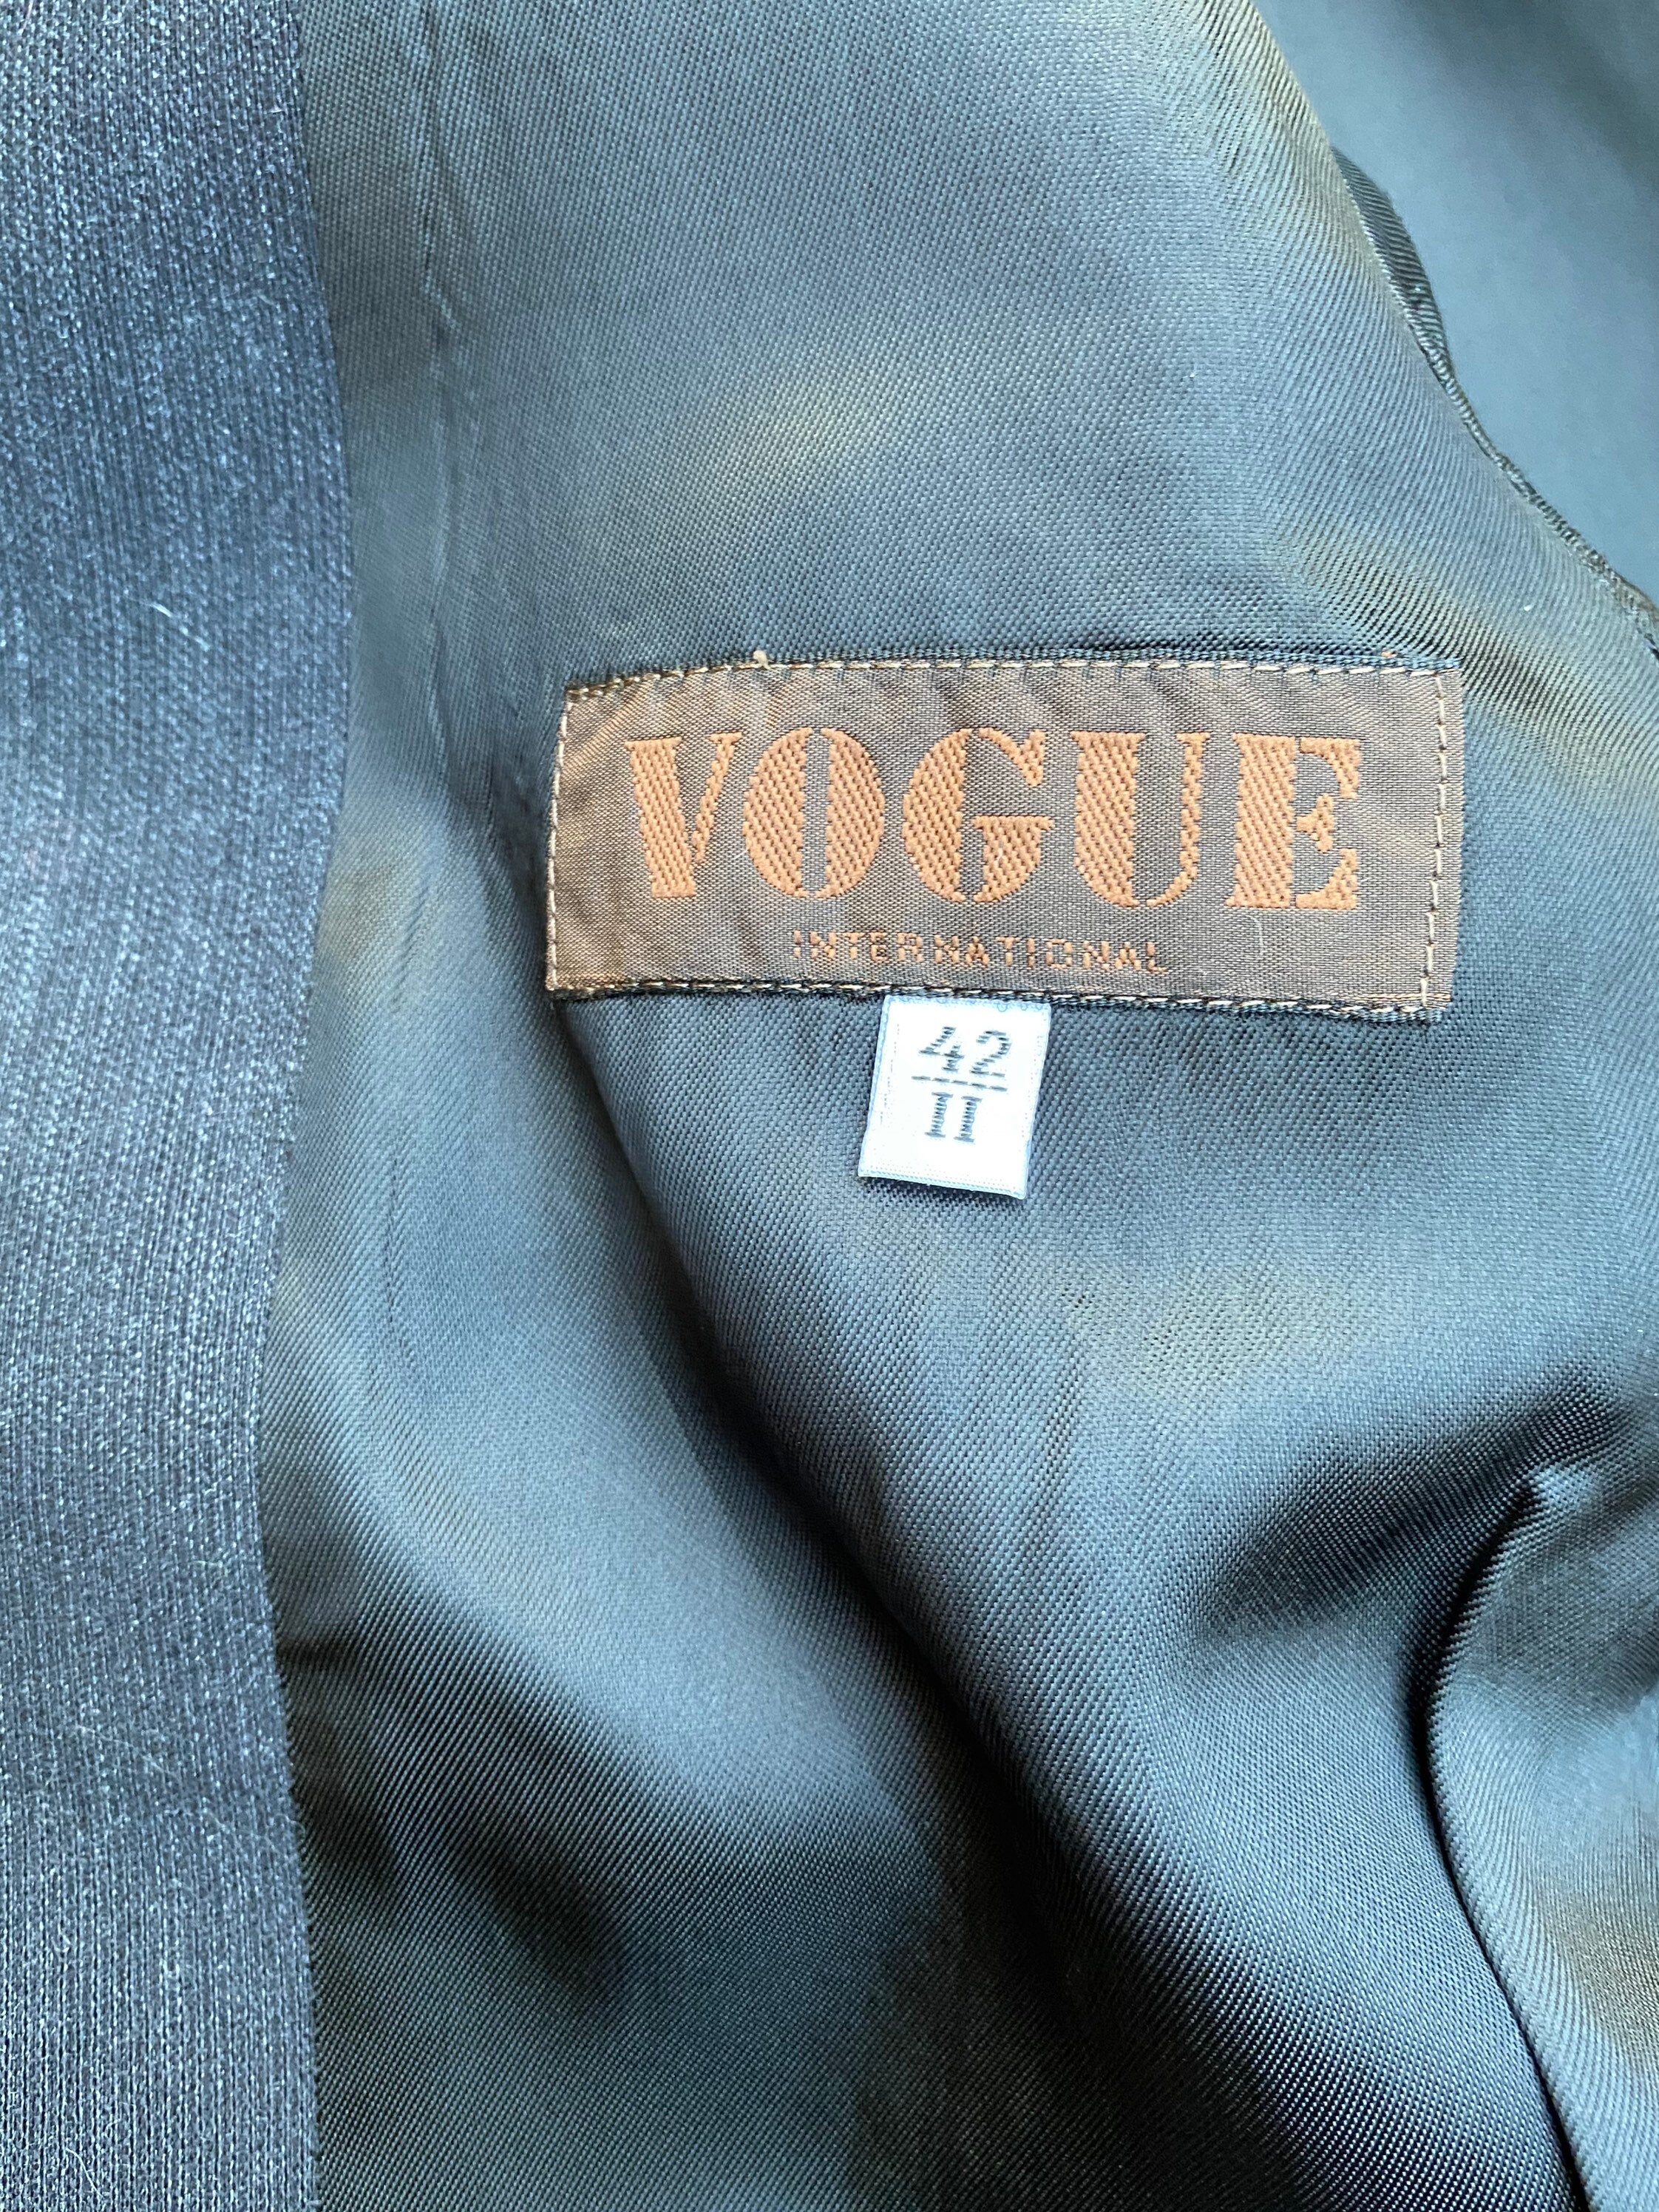 90s Vintage Jacket Vogue/design Blazer Vogue/original Jacket | Etsy